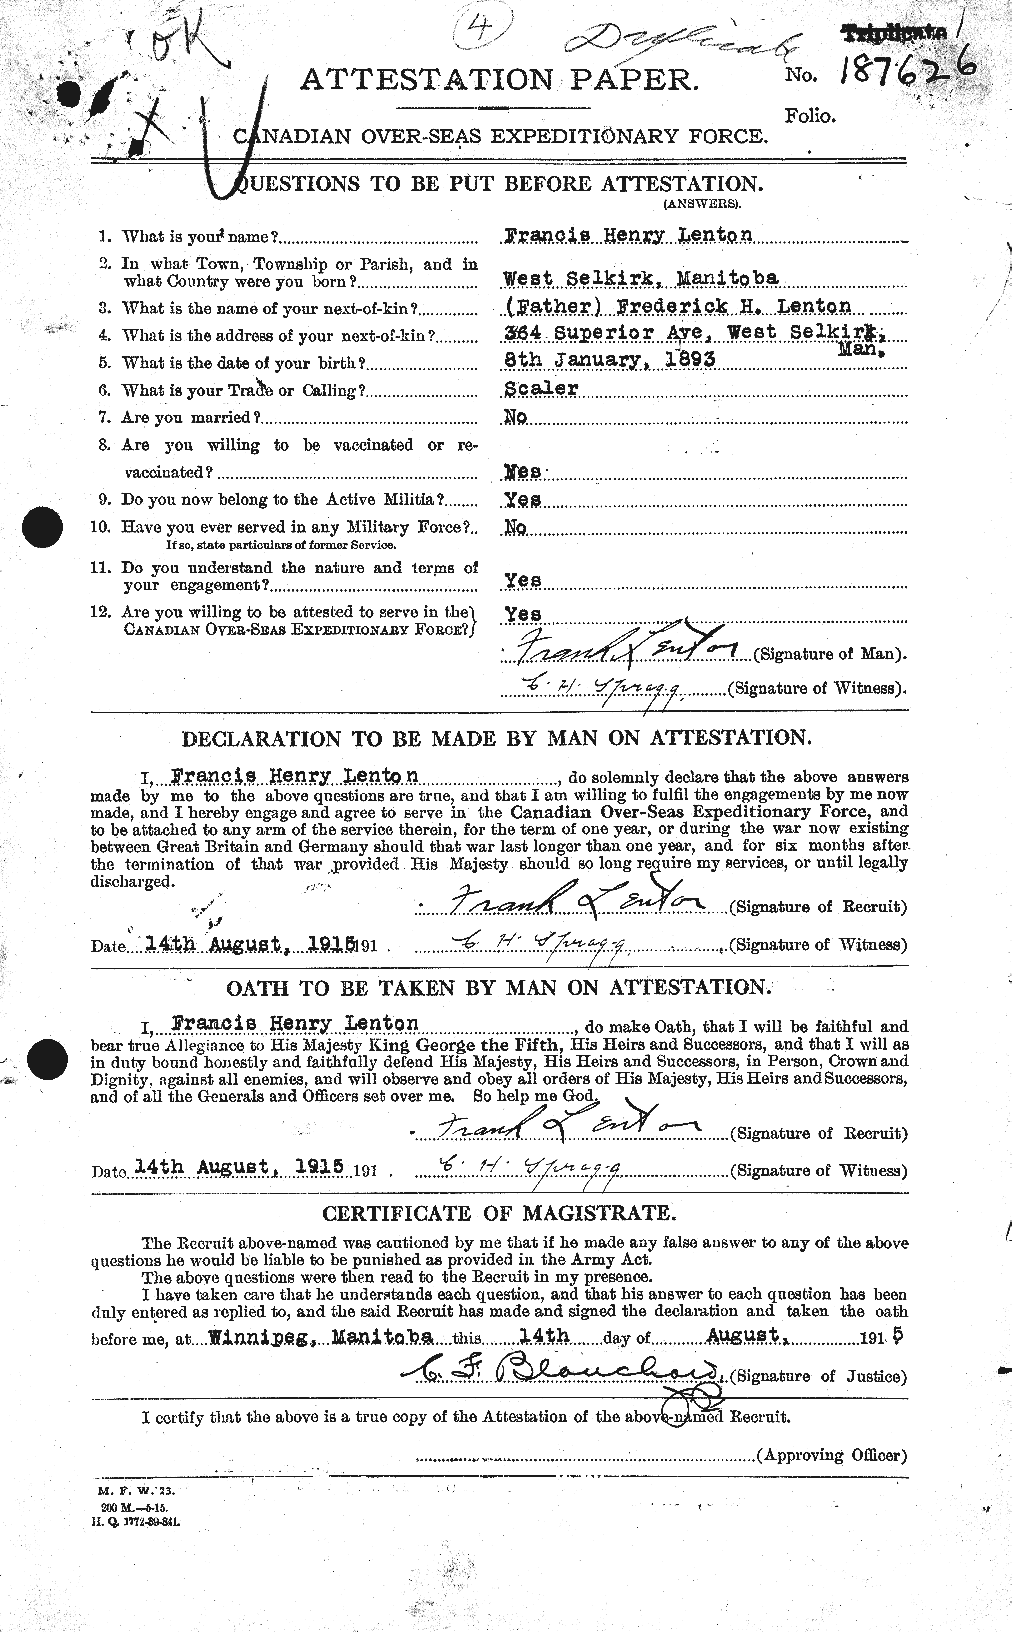 Dossiers du Personnel de la Première Guerre mondiale - CEC 458776a